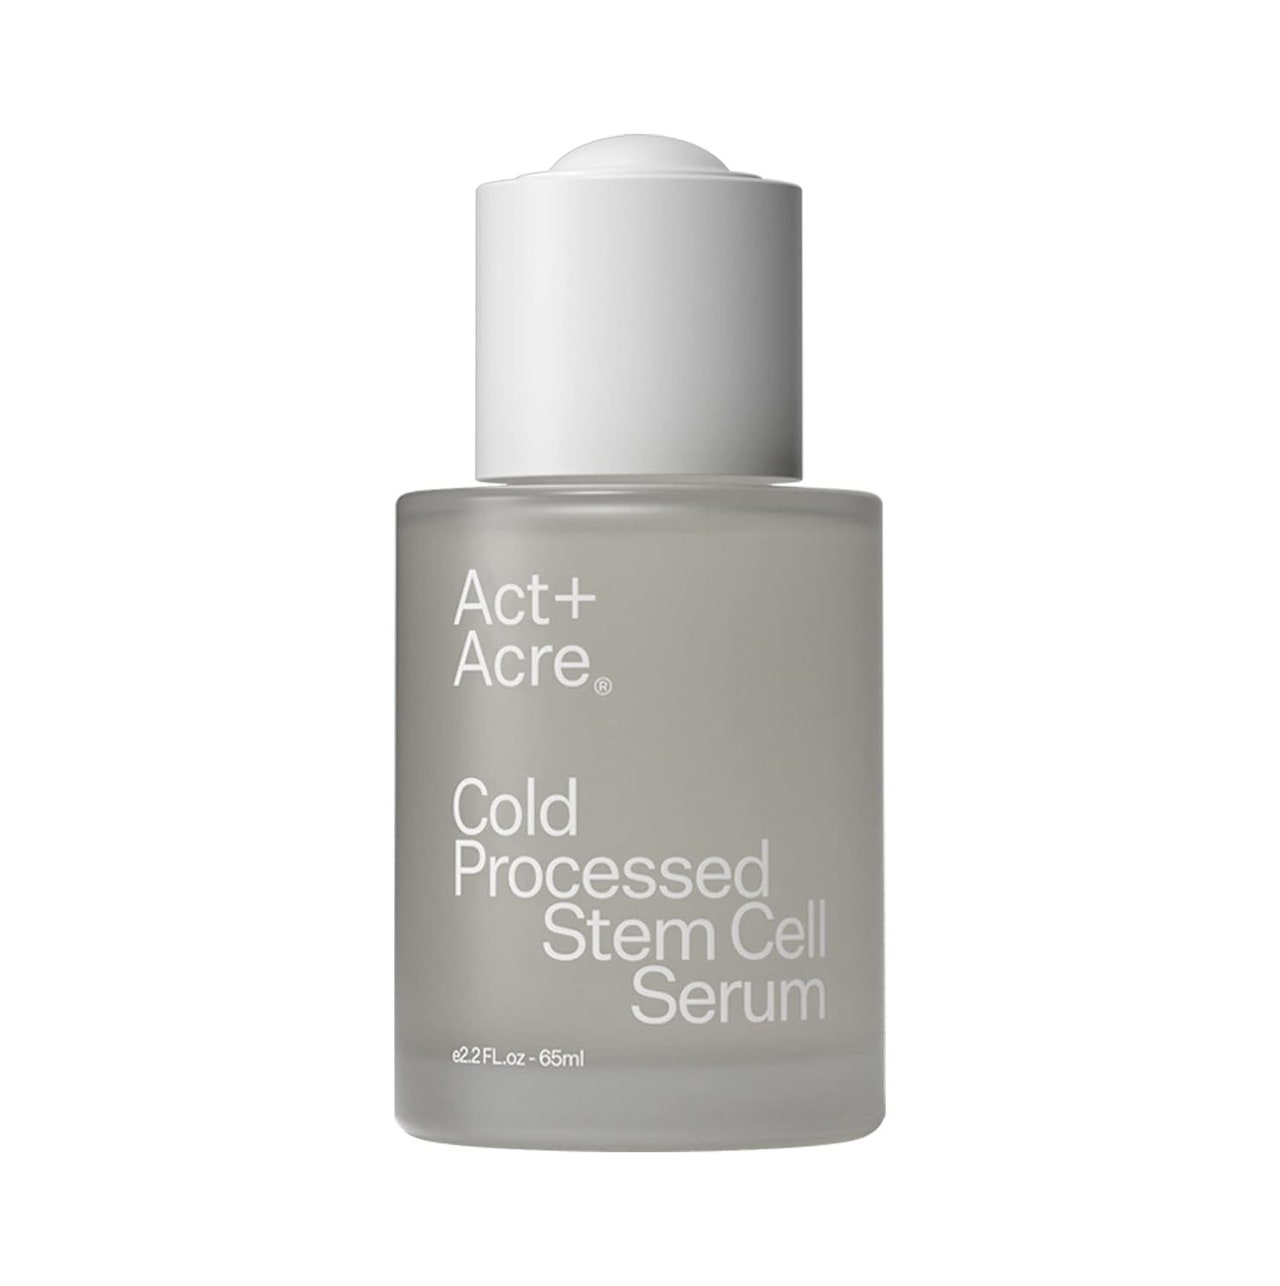 Act+Acre Kaltverarbeitetes Stammzellserum auf weißem Hintergrund